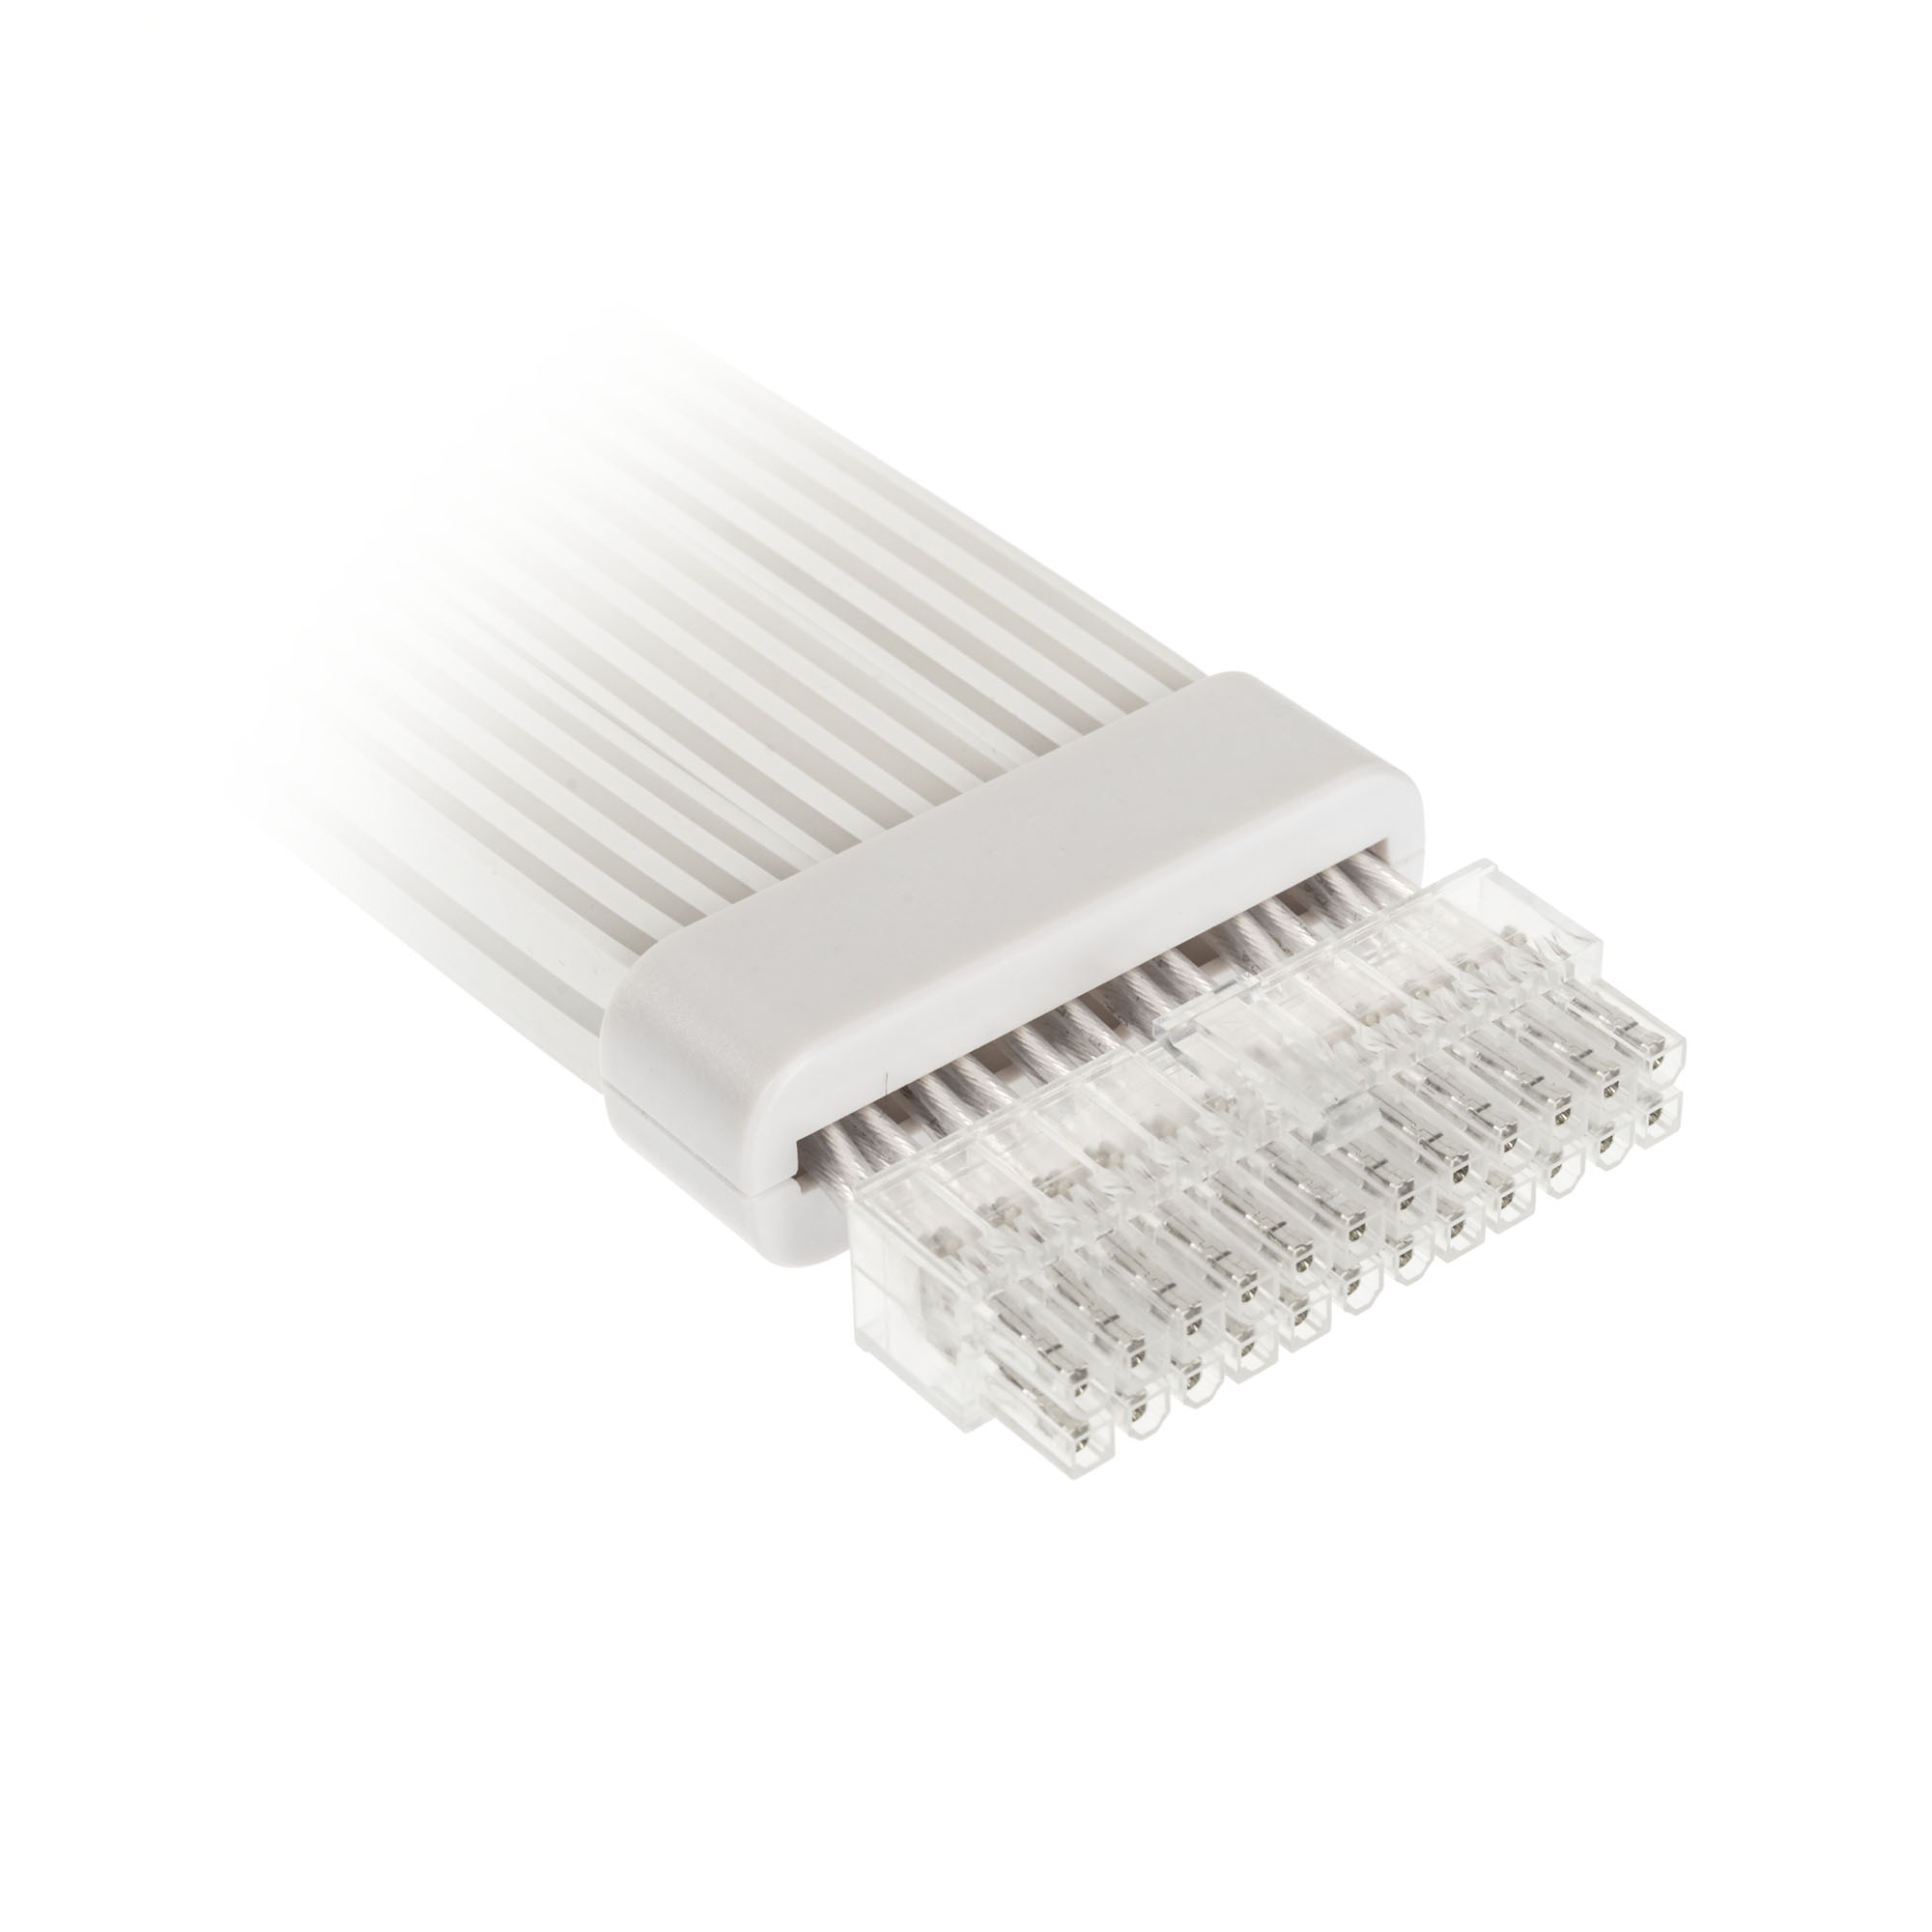 Kolink - Kolink Umbra Radiant ARGB 24-Pin Motherboard Extension Cable